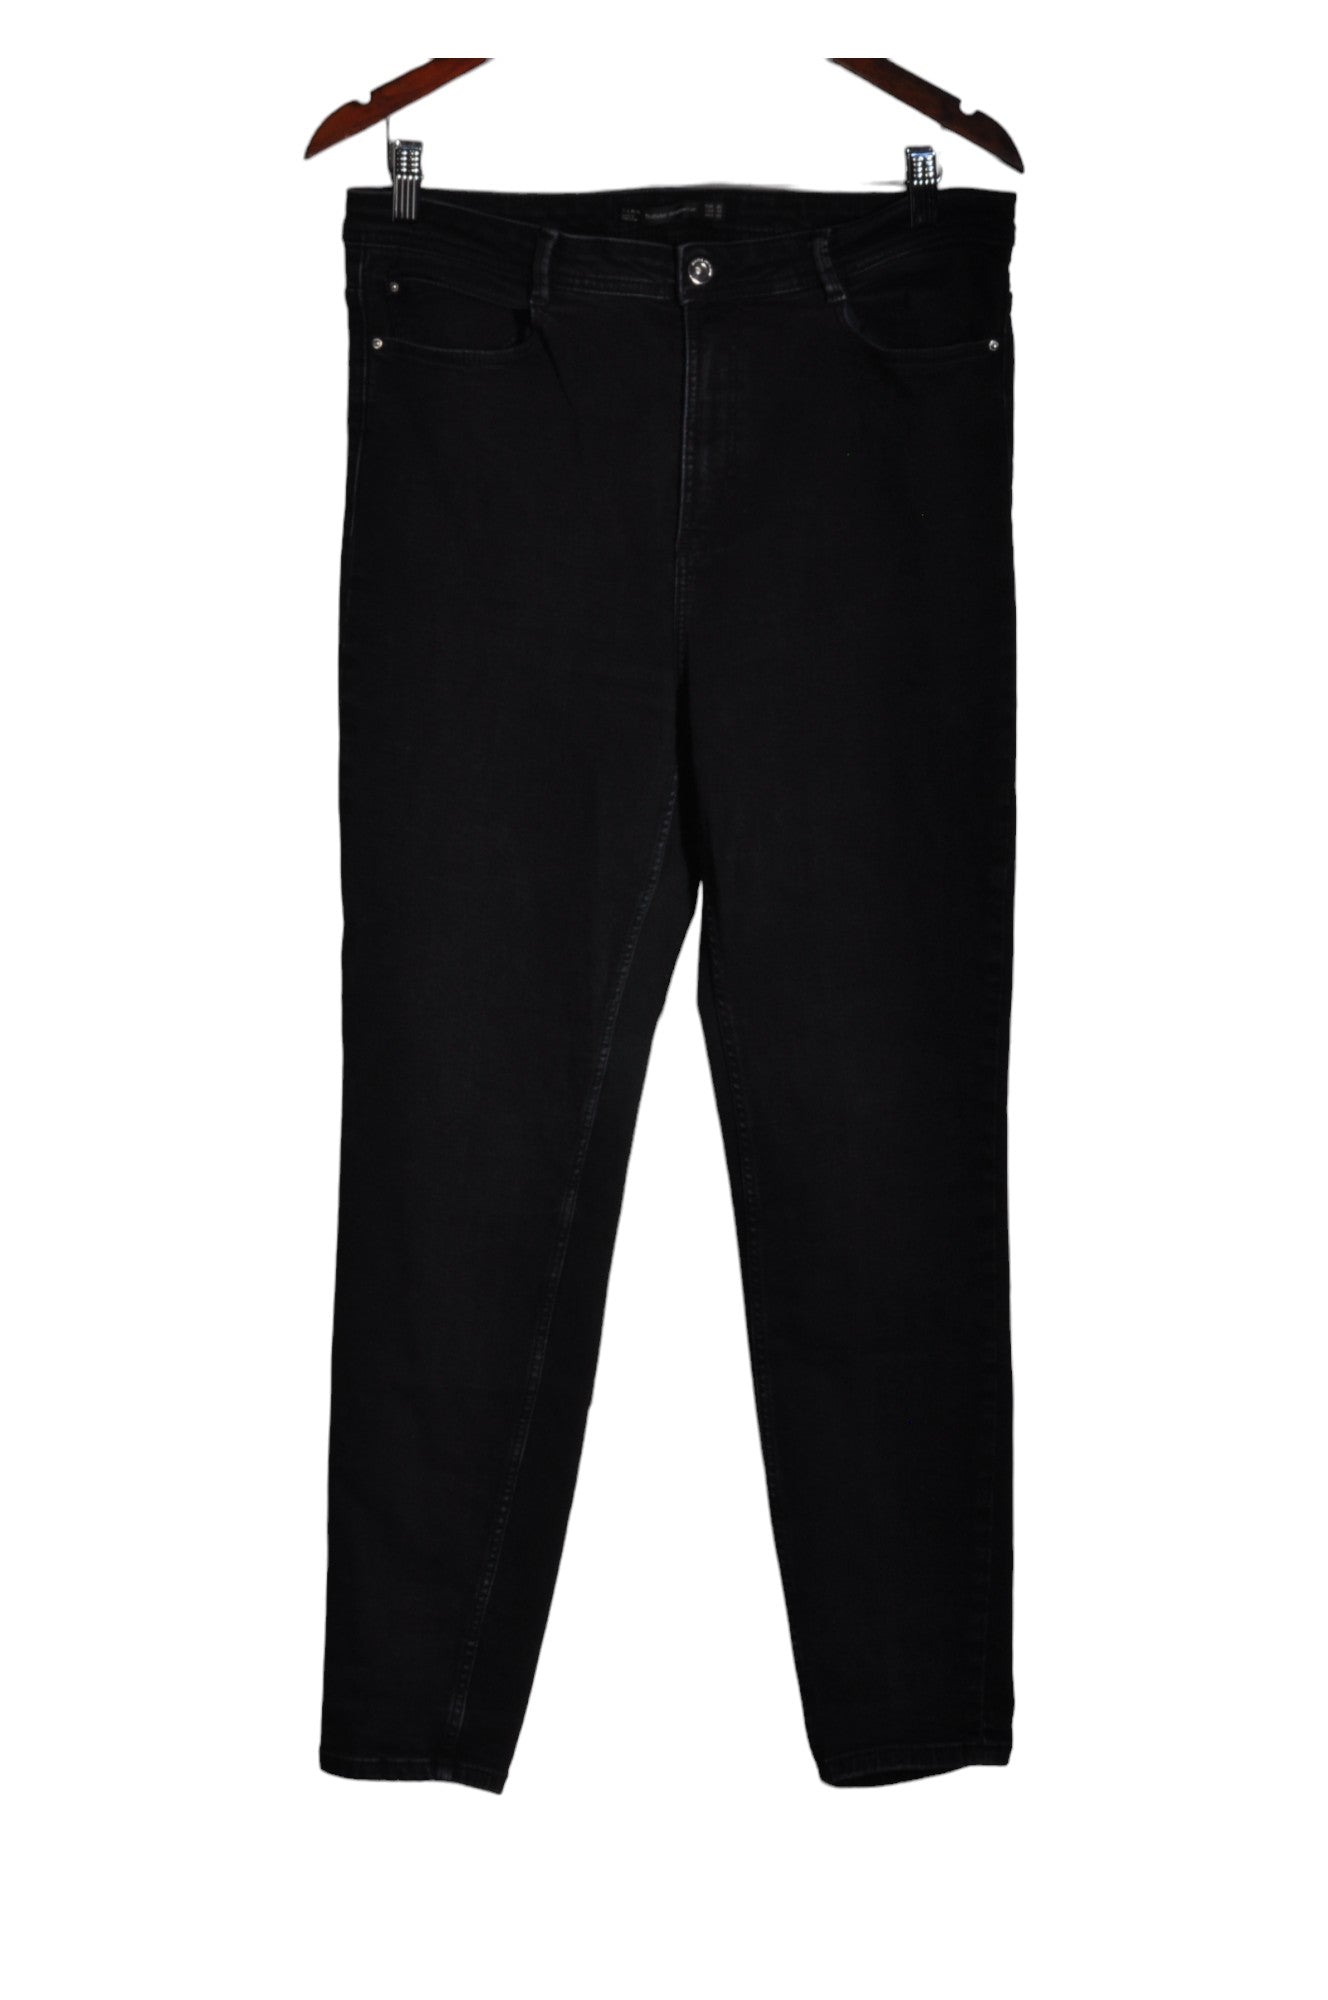 ZARA Women Straight-Legged Jeans Regular fit in Black - Size 14 | 16 $ KOOP